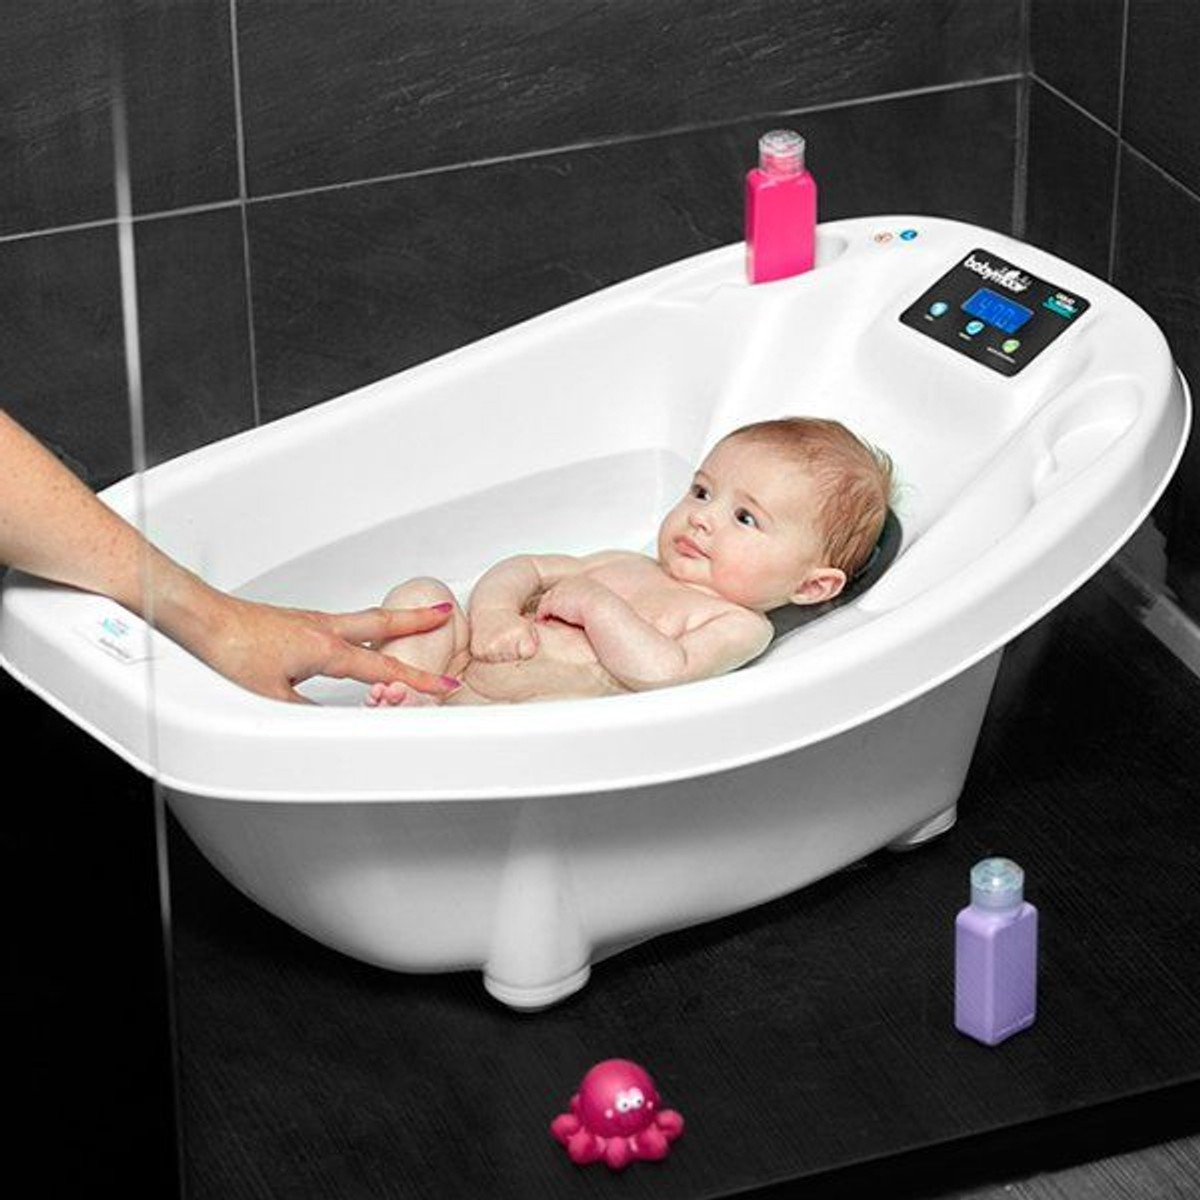 Comment Choisir un Thermomètre Bain Pour Bébé